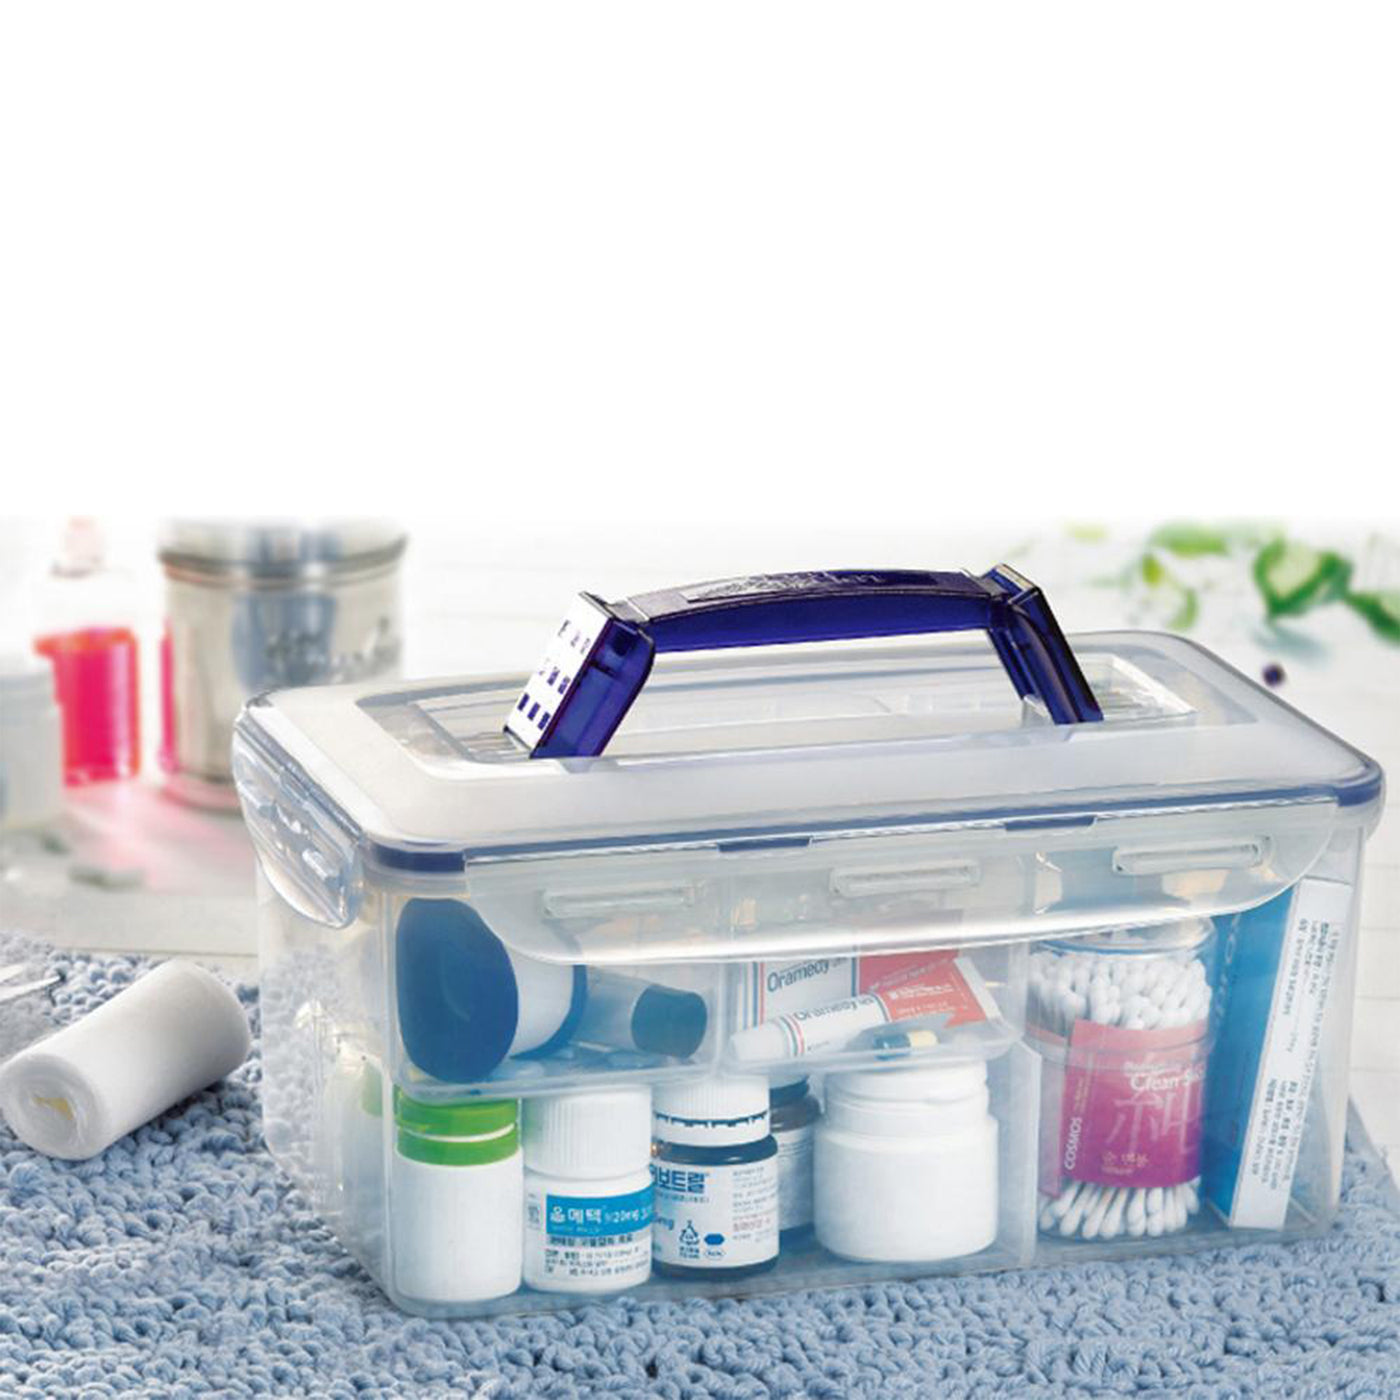 Classic First Aid Kit Box - 5LTR